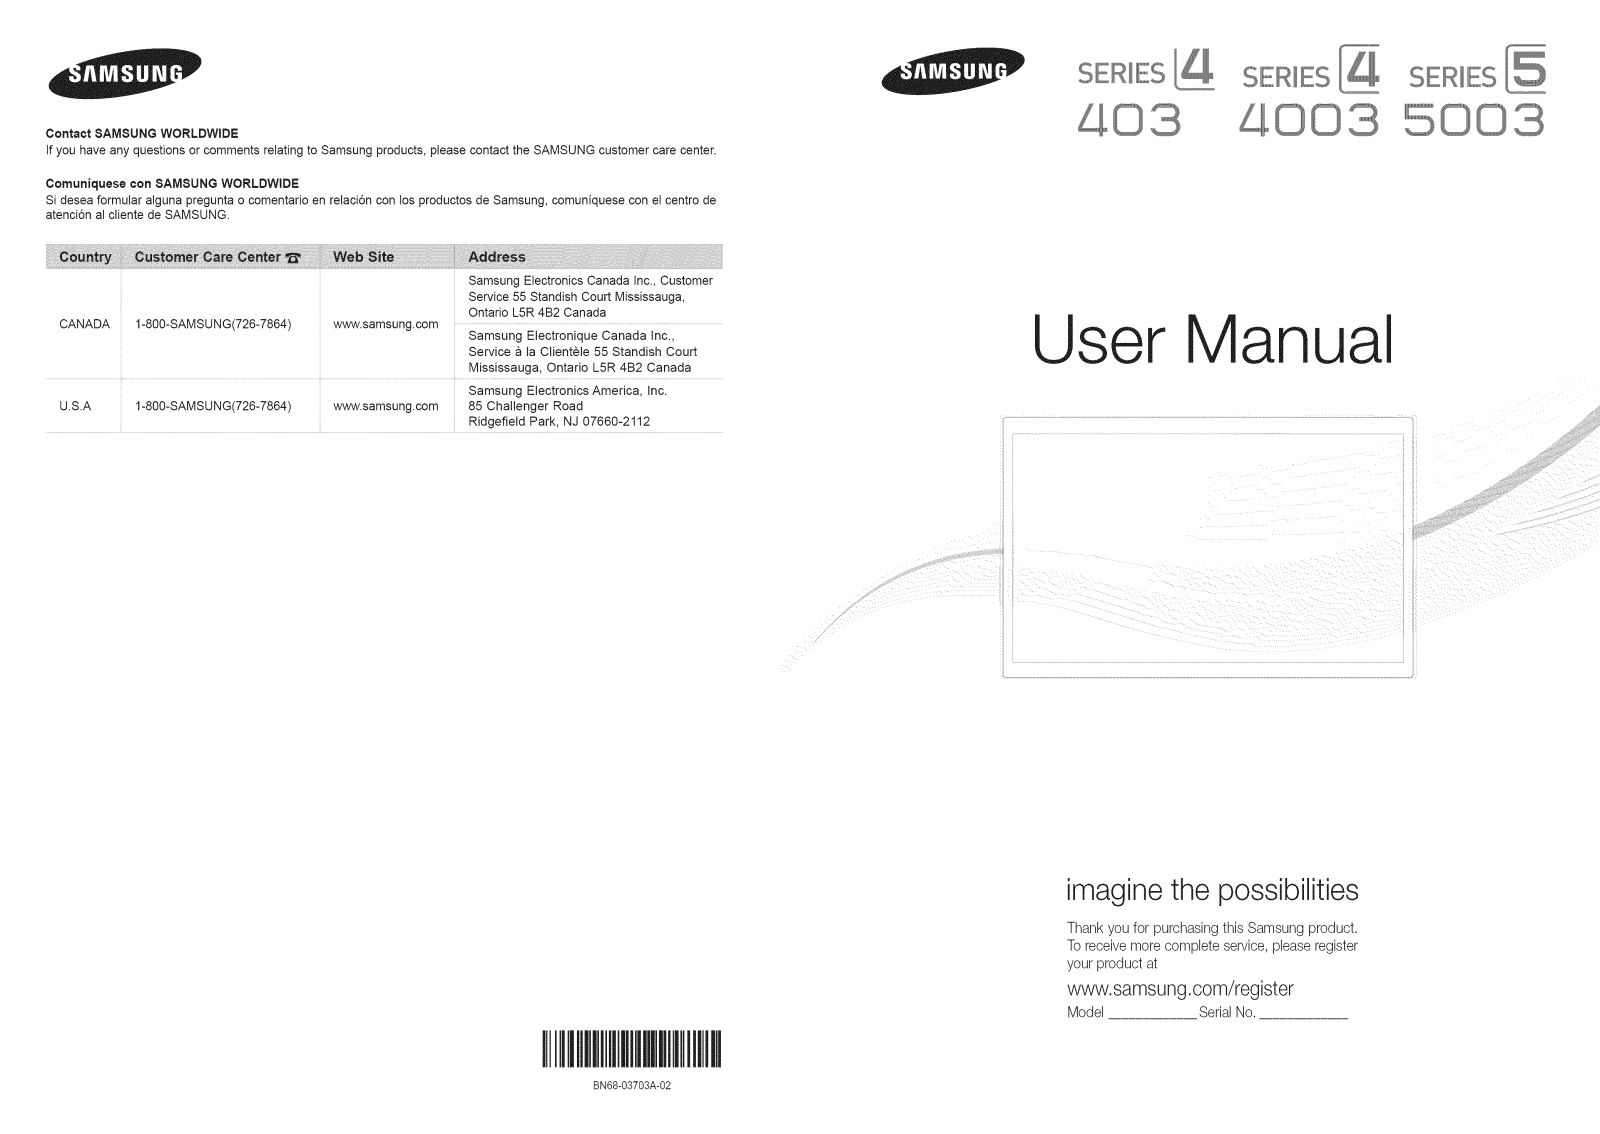 Samsung UN32D4003BDXZA-H301, UN26D4003BDXZA-CN01, UN22D5003BFXZA-SY01, UN19D4003BDXZA-SY01, LN32D403E4DXZA-SP01 Owner’s Manual